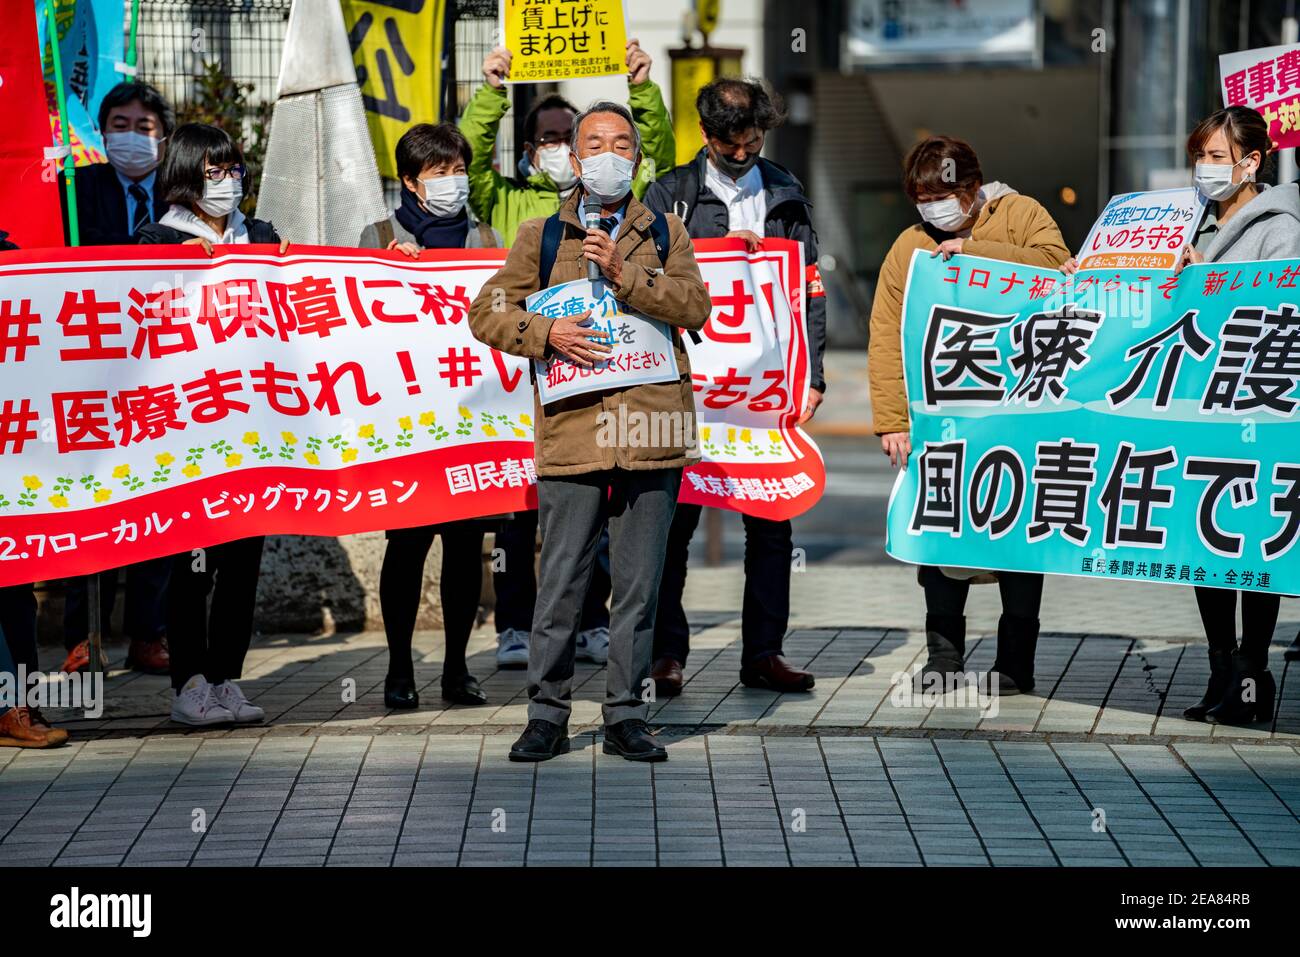 Demonstranten vor dem Shinjuku-Bahnhof in Tokio, Japan, drängen auf ein angemesseneres COVID-19-Pandemienetz für wirtschaftliche Sicherheit und Wohlfahrt der Regierung für kleine und mittlere Unternehmen, Freiberufler und Unternehmer. Demonstration von Mitgliedern der japanischen Föderation der Co-op-Gewerkschaften und der japanischen Föderation der Gewerkschaften für medizinische Arbeiter. Stockfoto